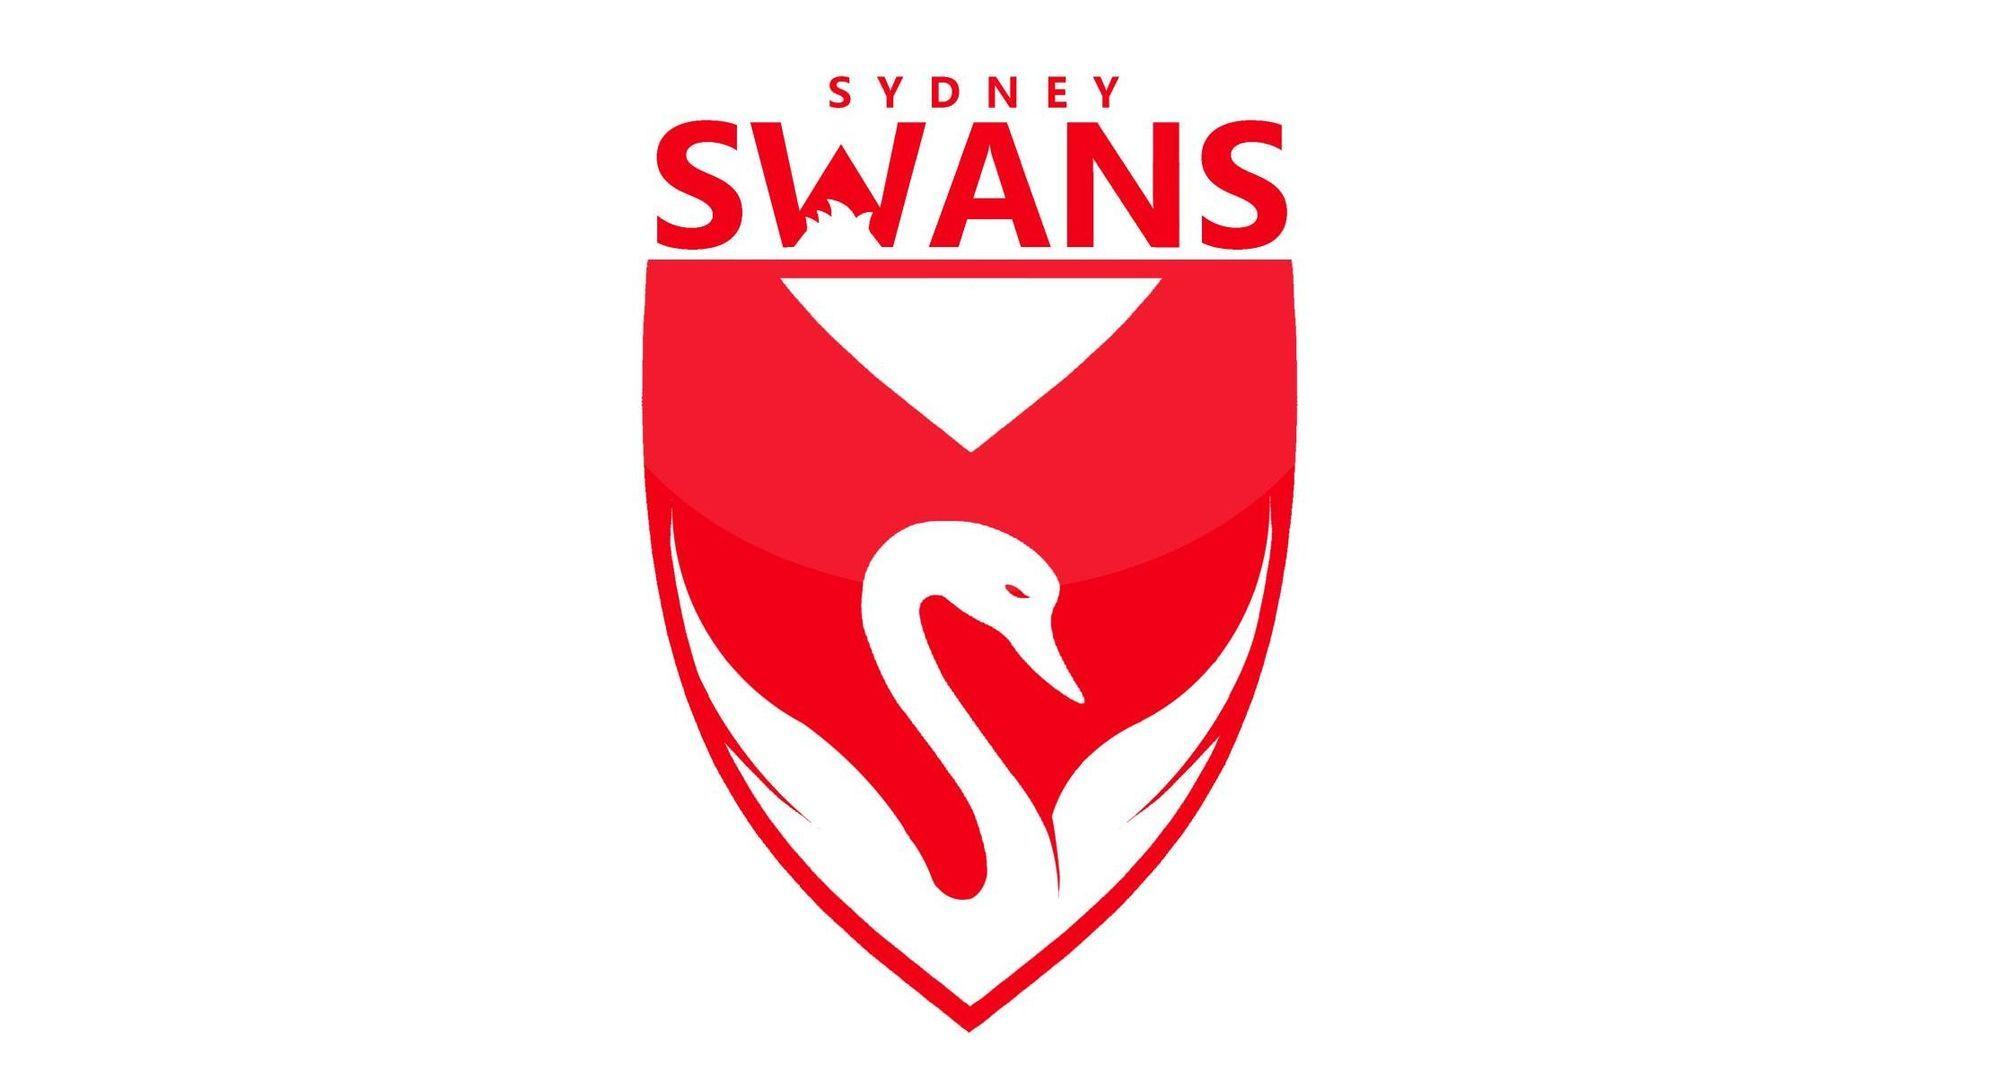 Swans Logo - Sydney Swans Football Club | AFL Wiki | FANDOM powered by Wikia